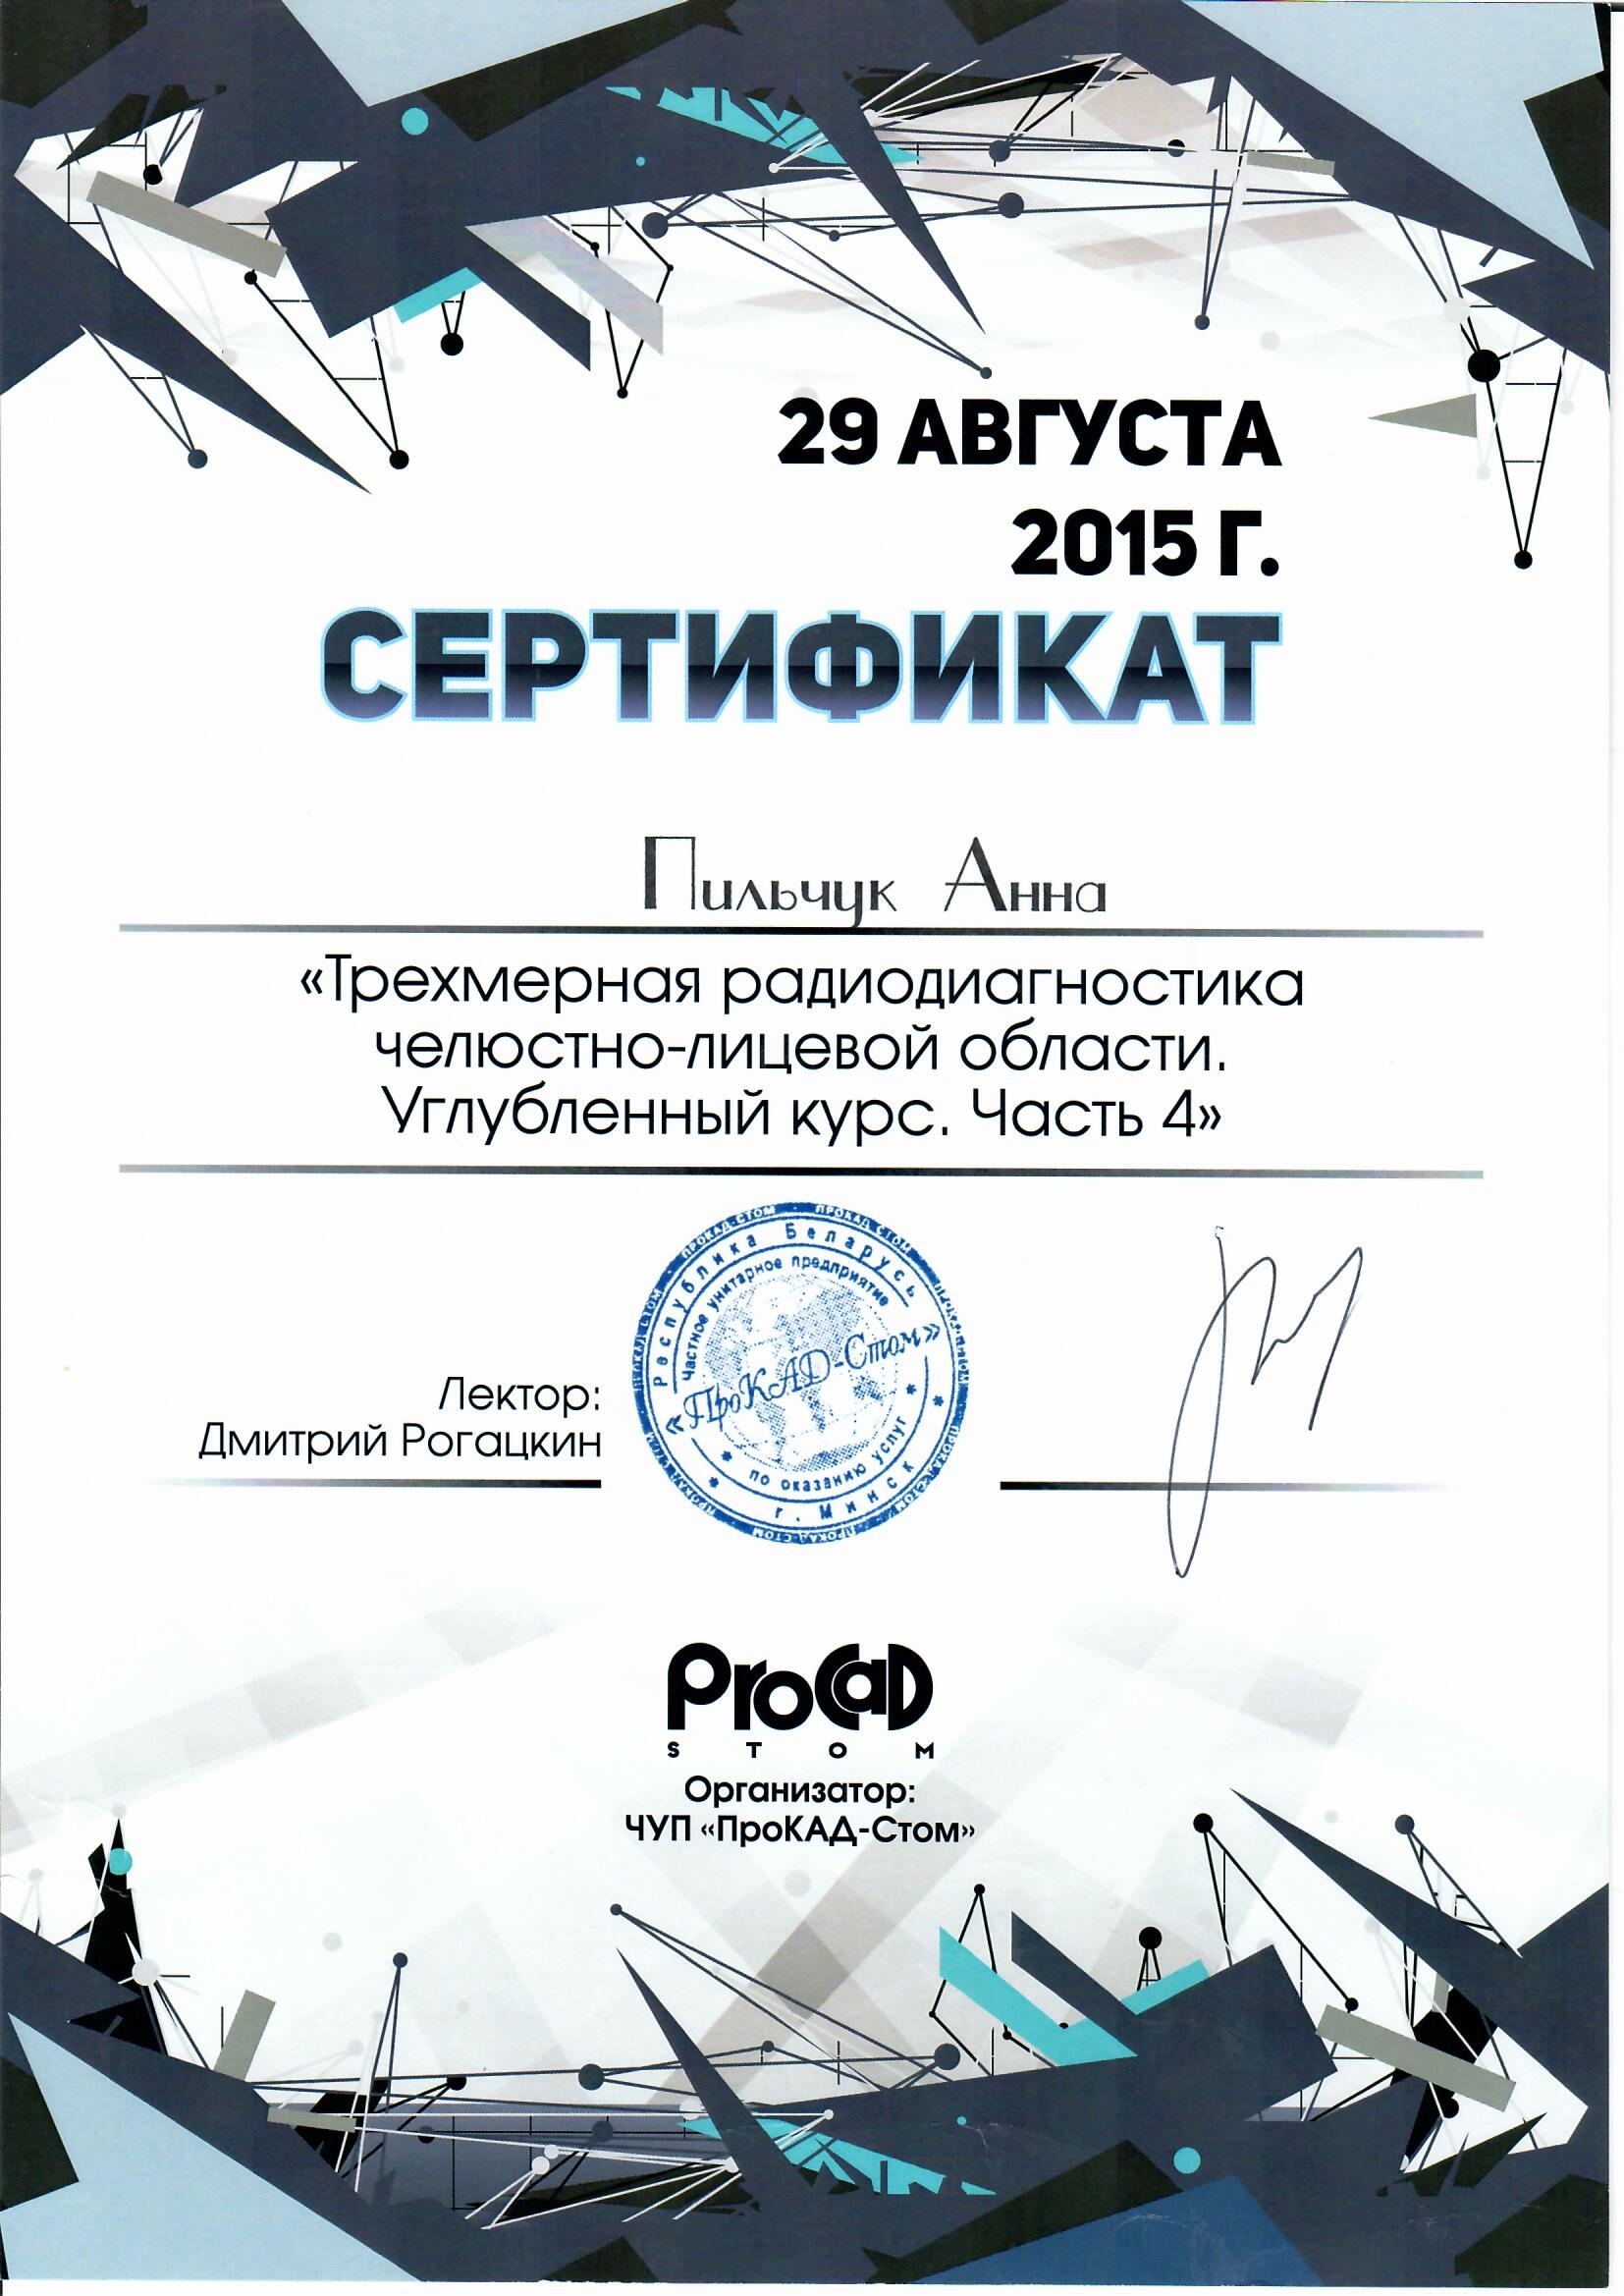 Pilchuk 2015-08